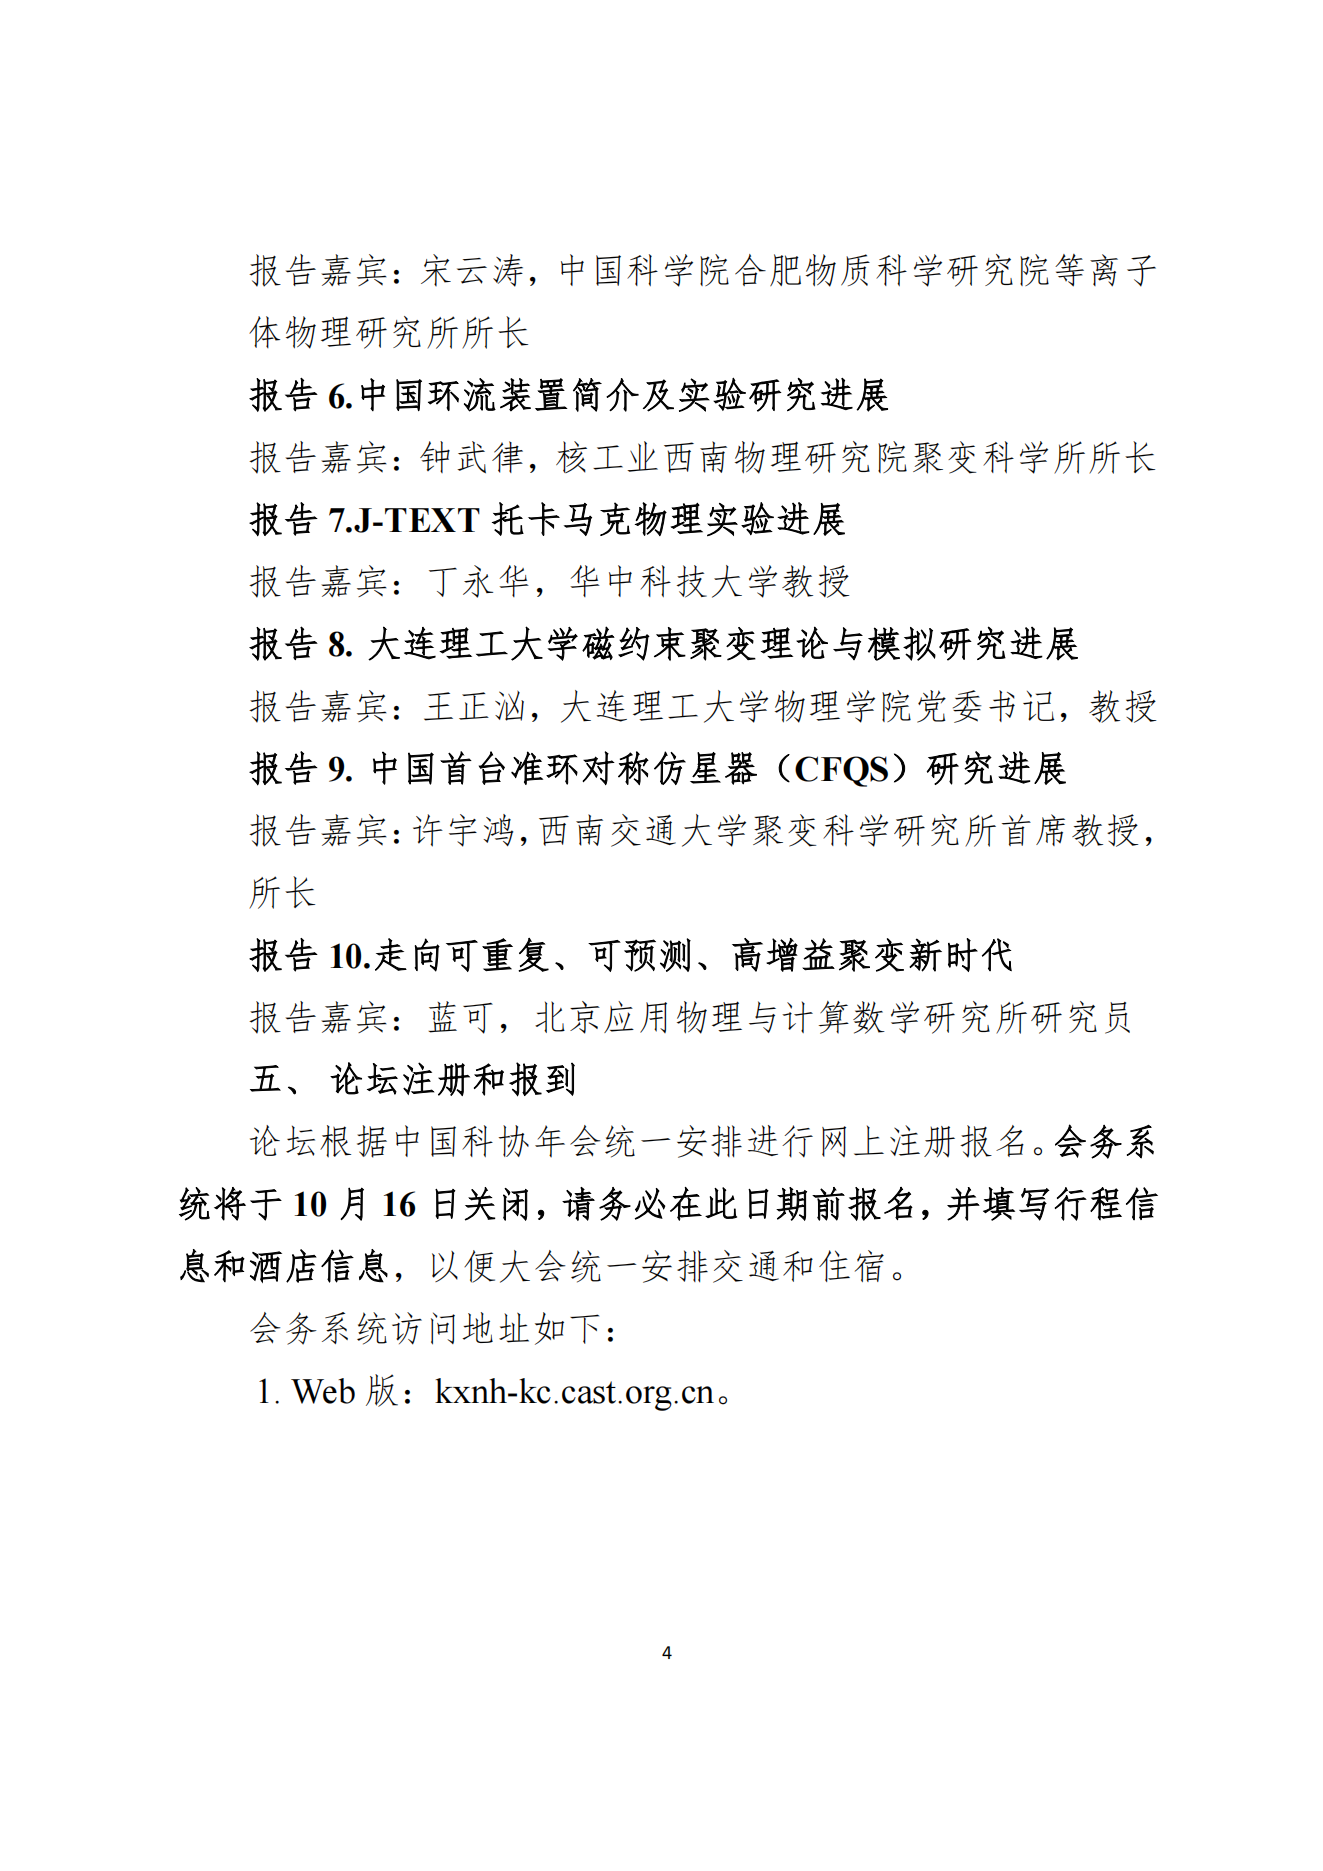 关于注册报名第二十五届中国科协年会“核能聚变点亮未来”论坛的通知(1)_03.png